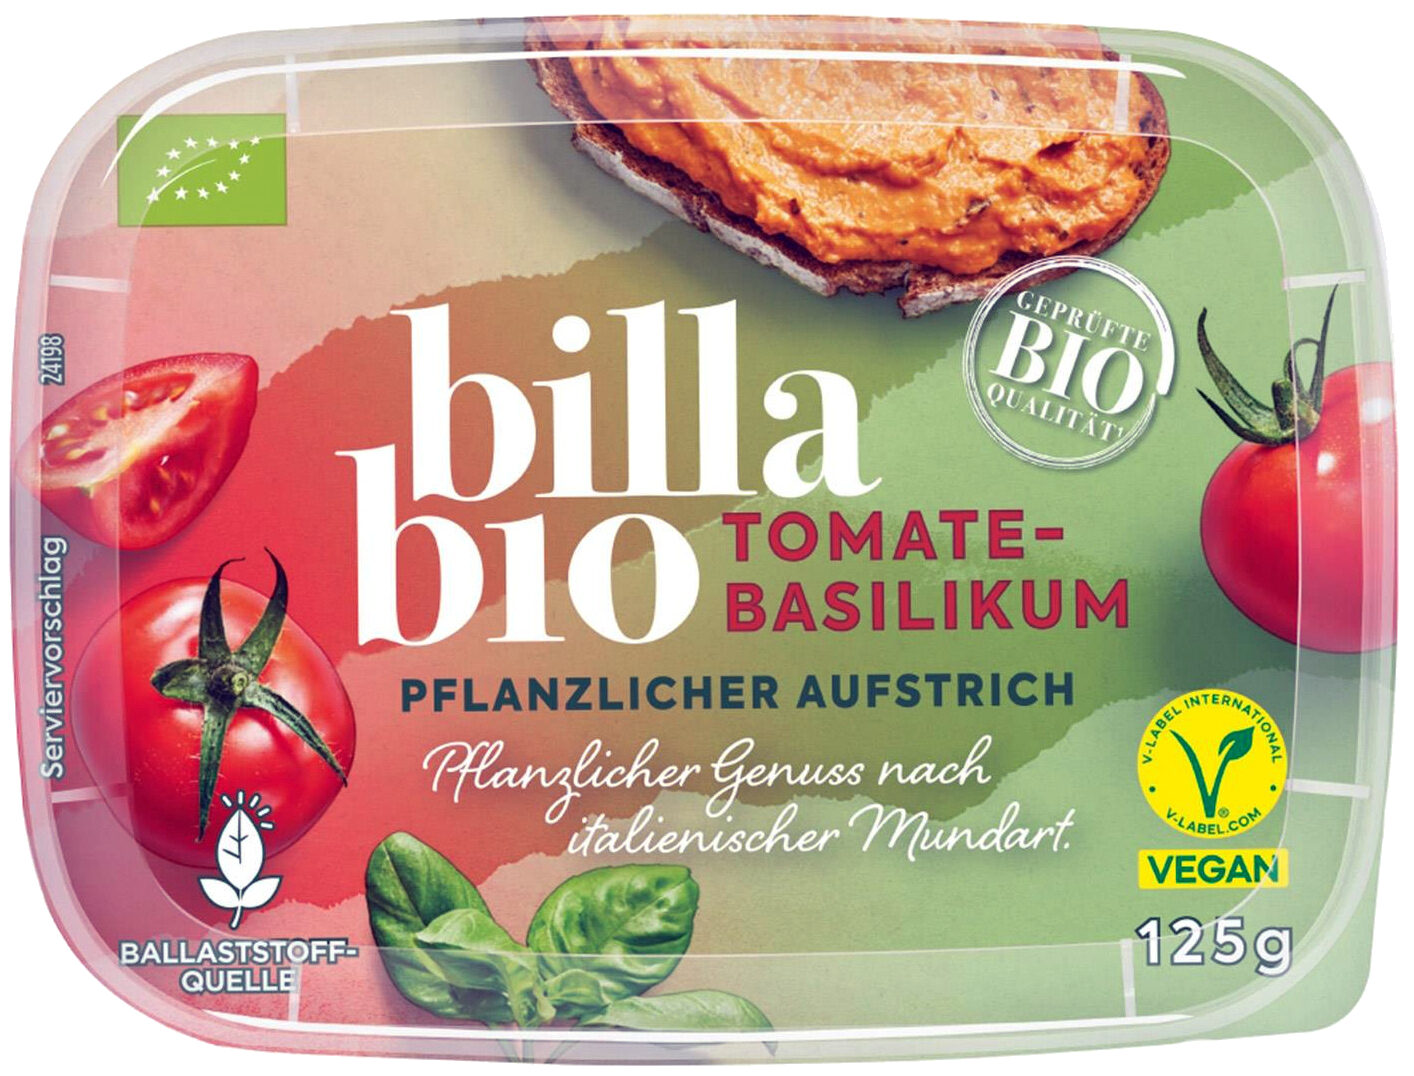 Pflanzlicher Aufstrich Tomate-Basilikum - Produkt